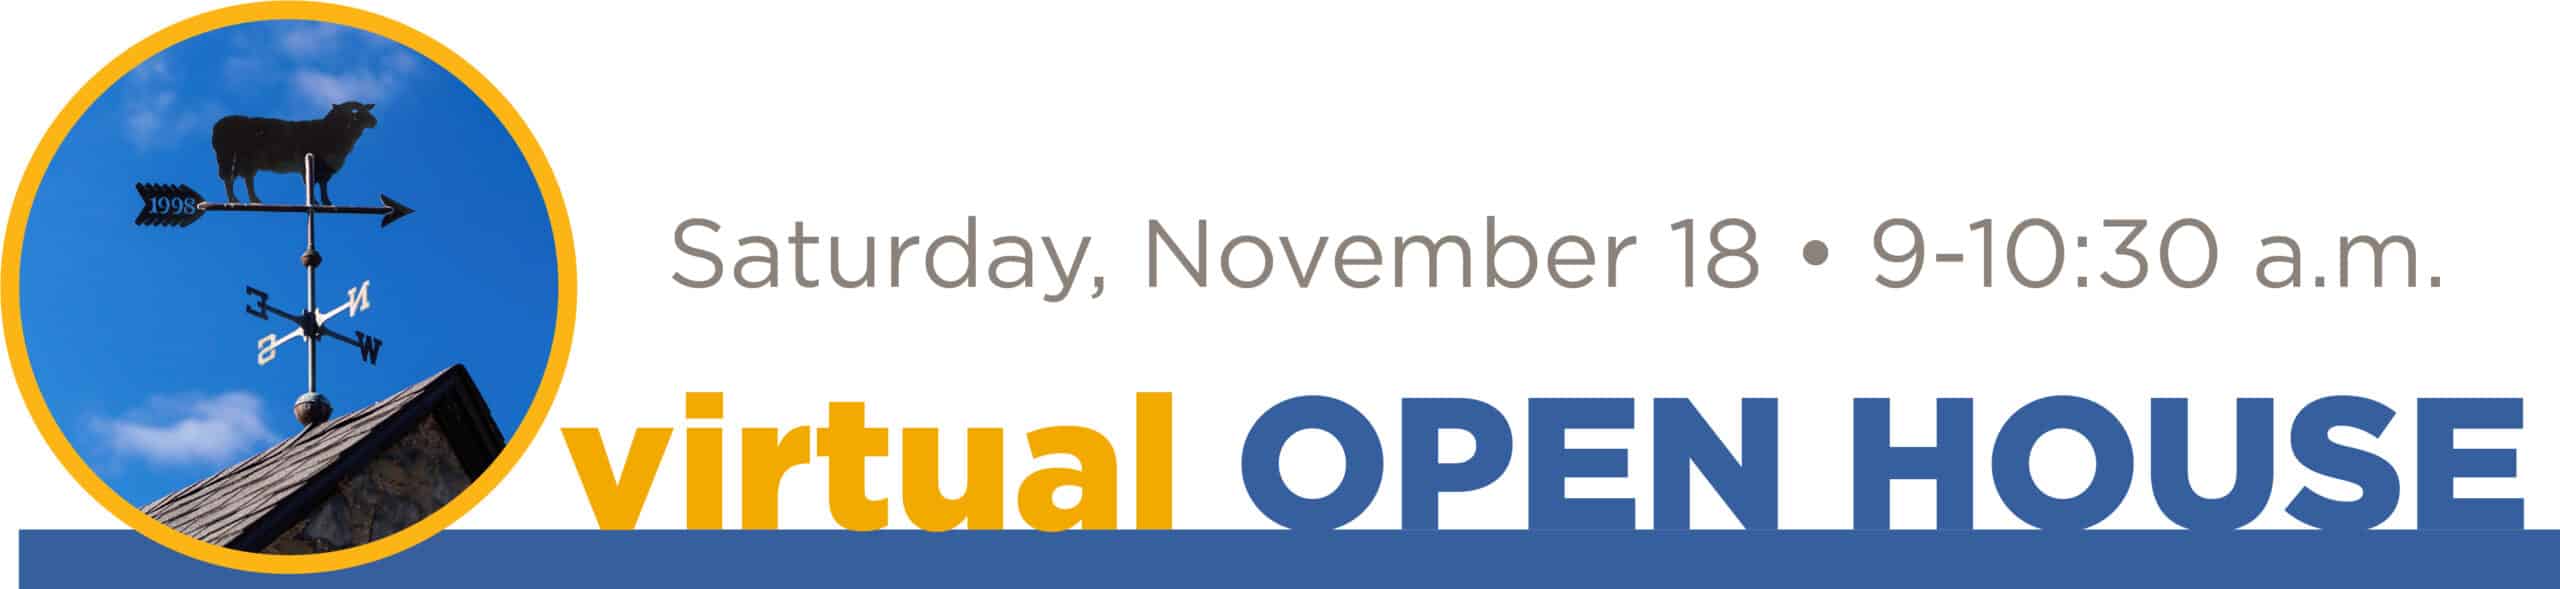 Virtual Open House November 18